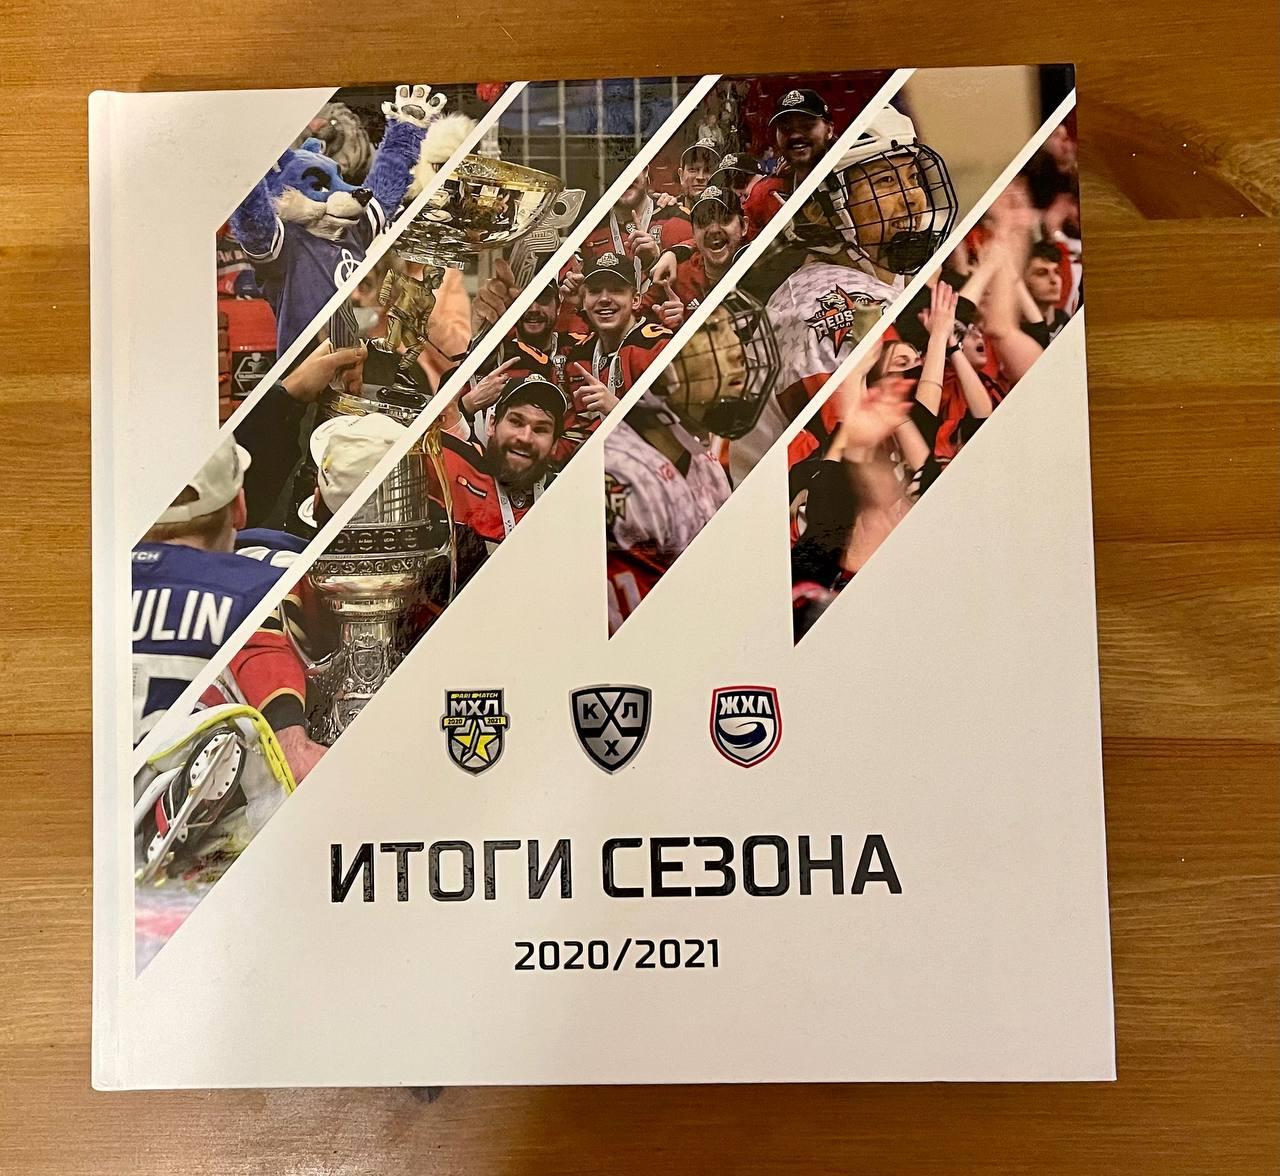 хоккей КХЛ МХЛ ЖХЛ Итоги сезона 2020/21